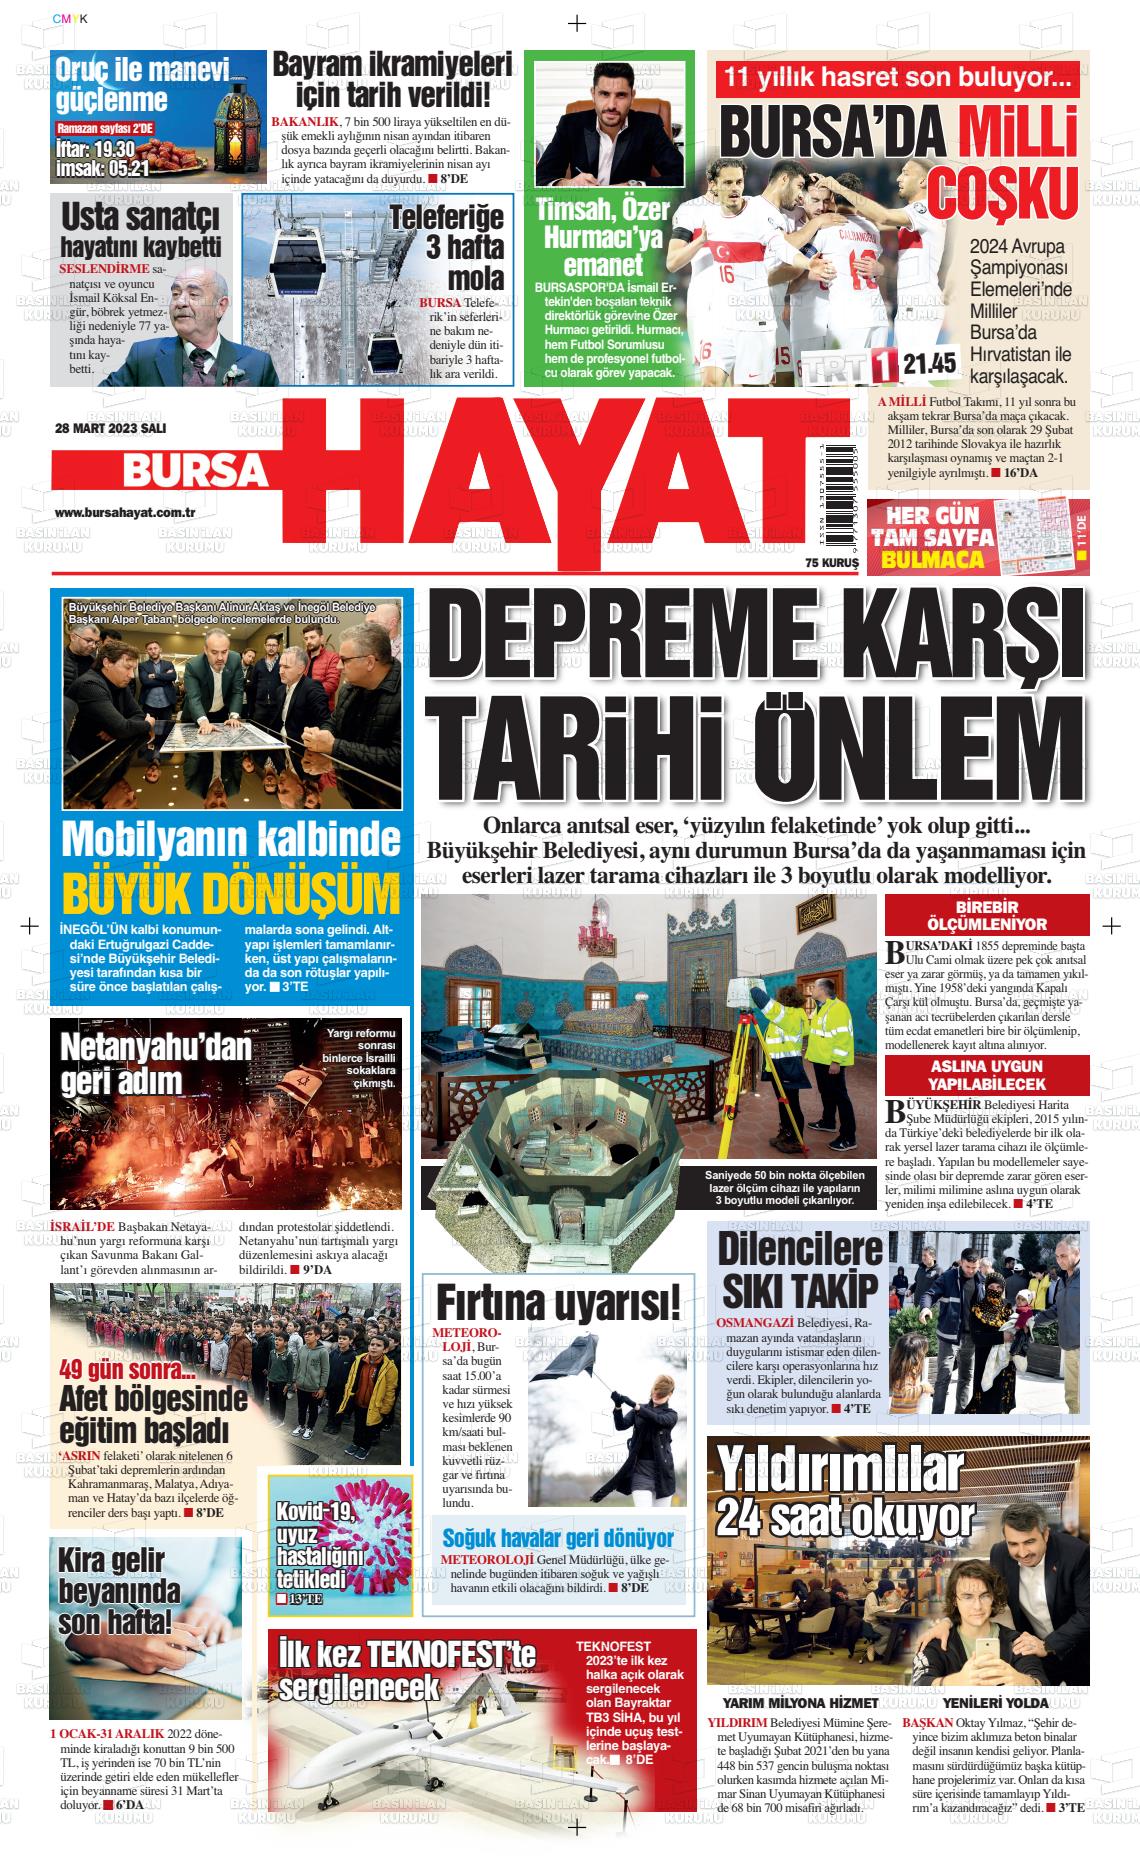 28 Mart 2023 Bursa Hayat Gazete Manşeti